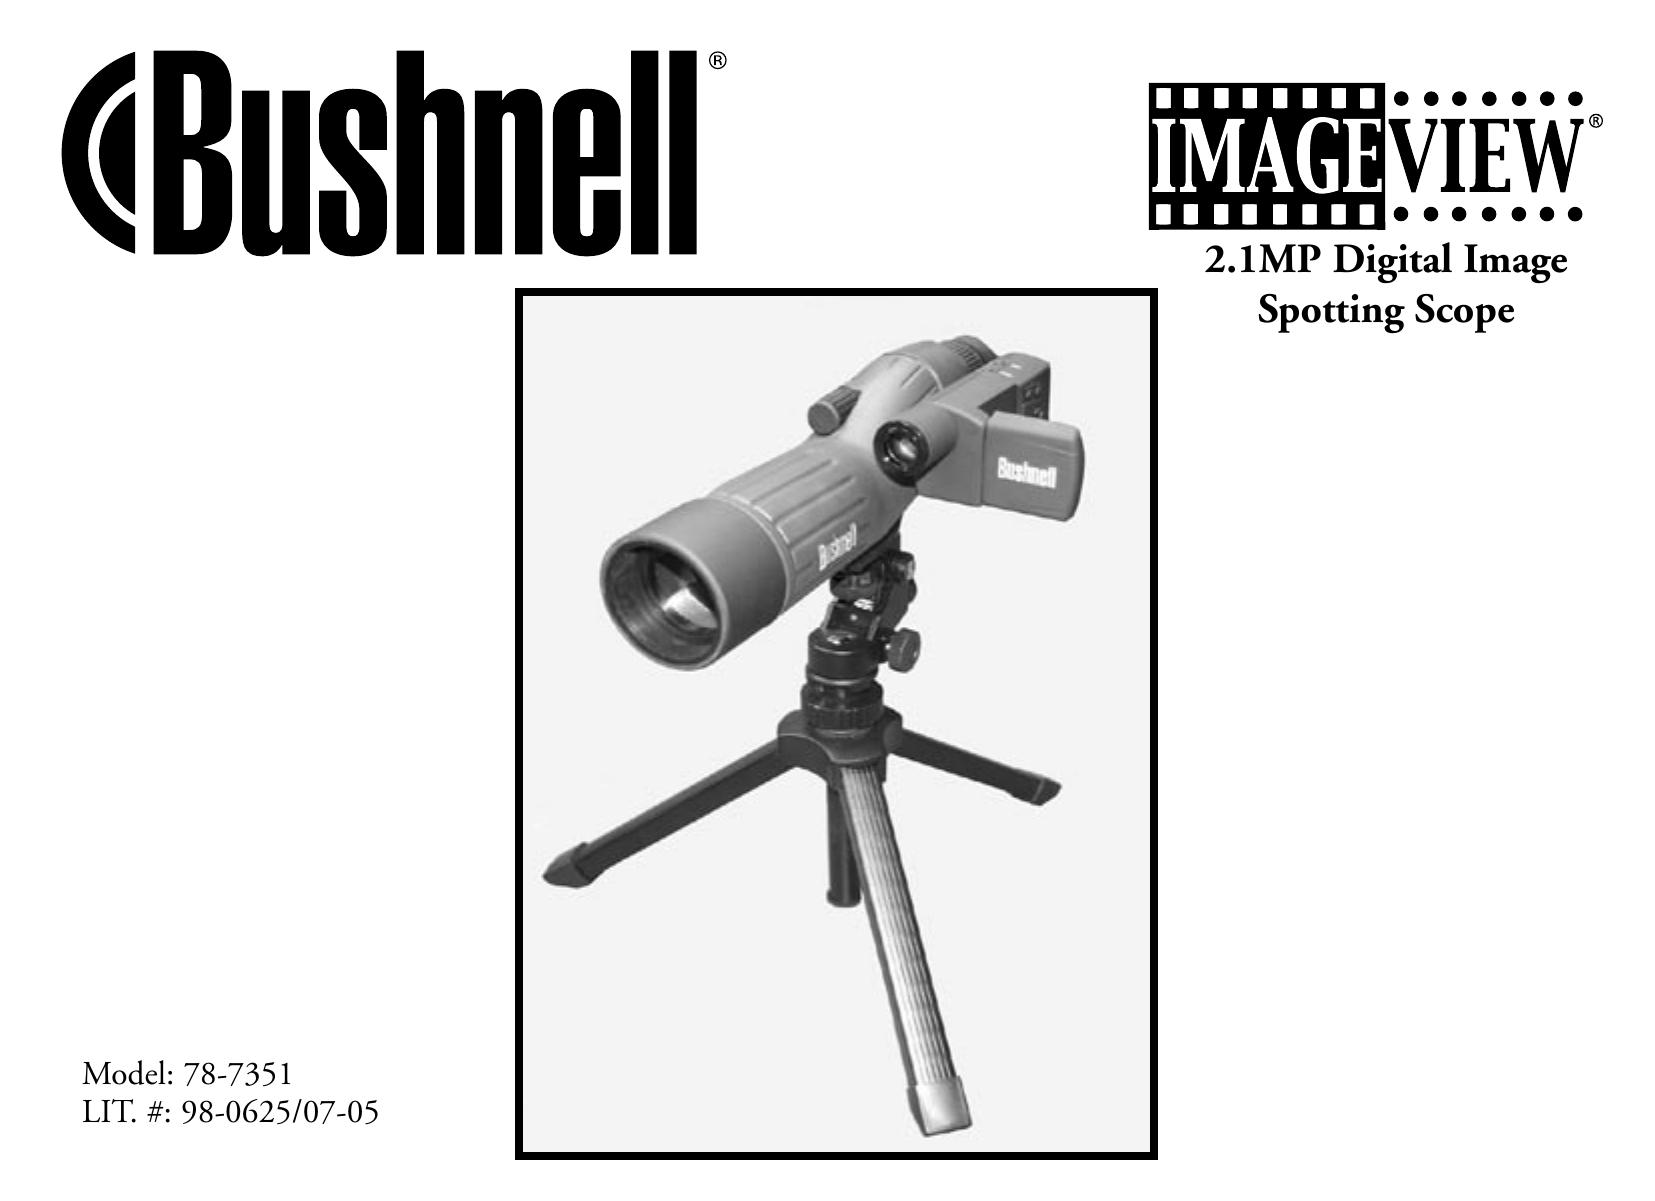 Bushnell 78-7351 Telescope User Manual